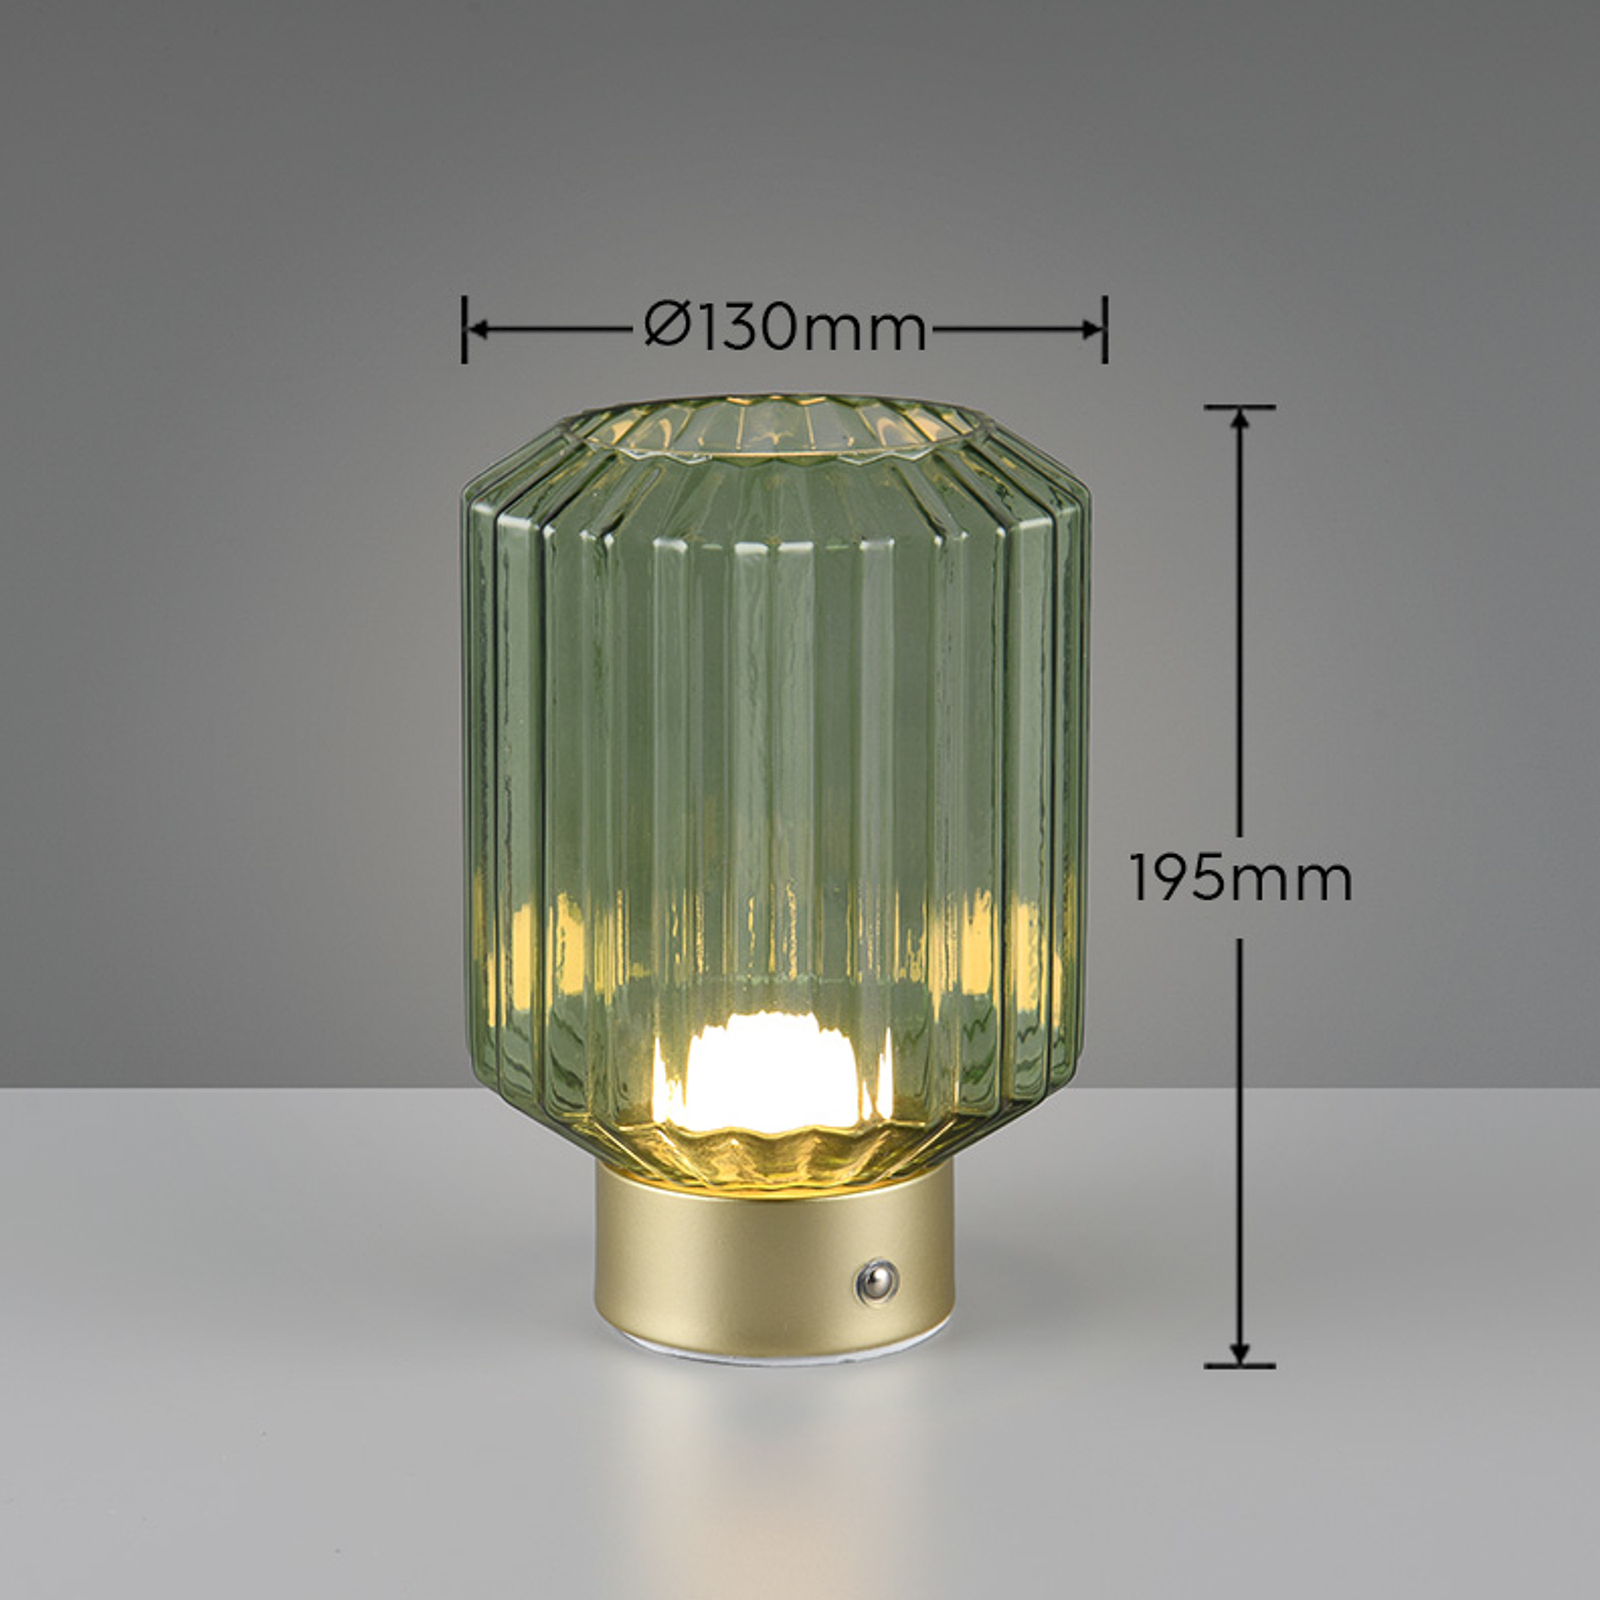 Stolna baterijska lampa Lord LED, mesing/zelena, visina 19,5 cm, staklo